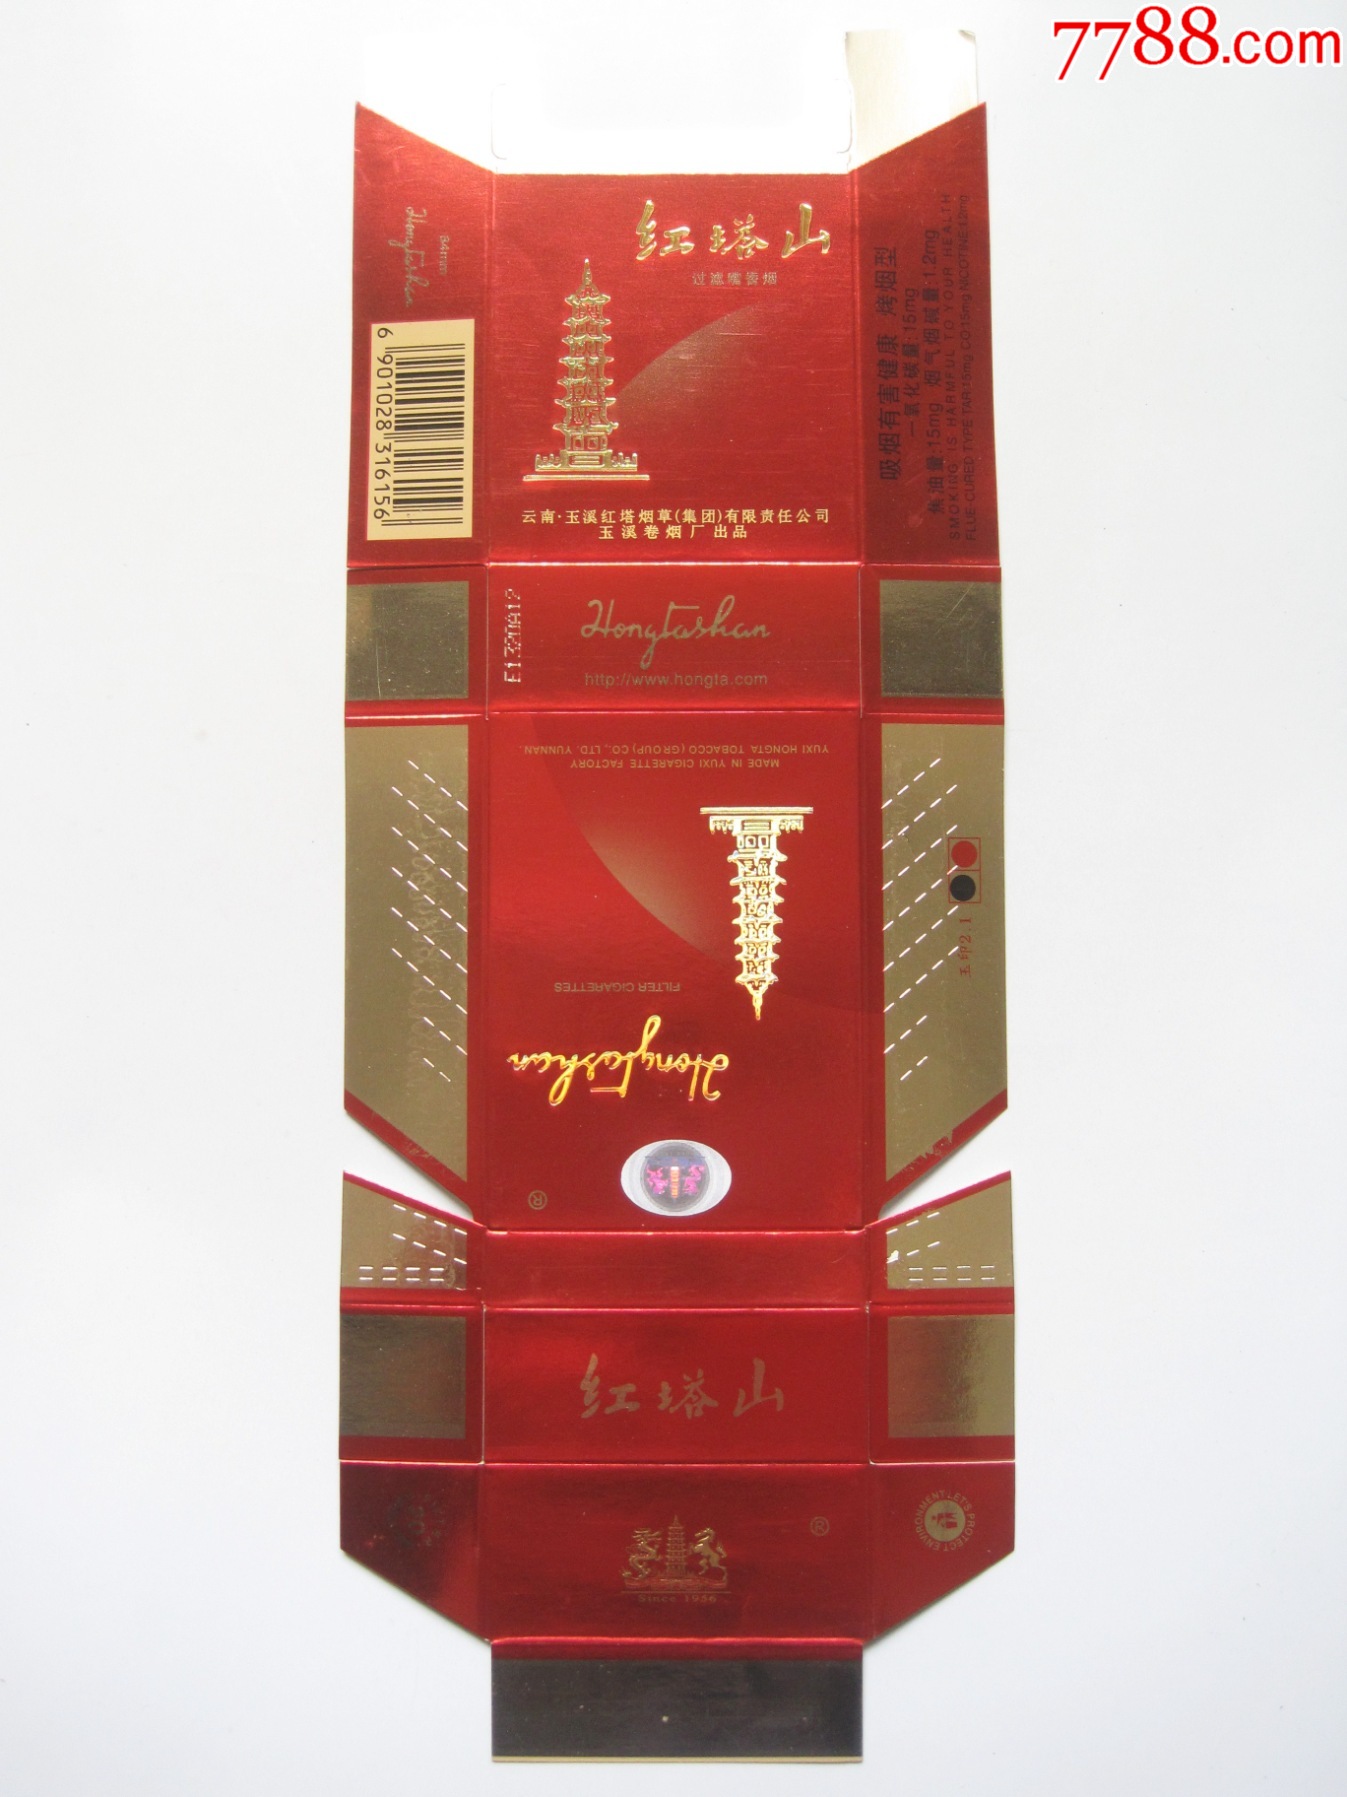 红色红塔山云南玉溪卷烟厂拆包标硬卡烟盒拆包标侧面短警句版较早期